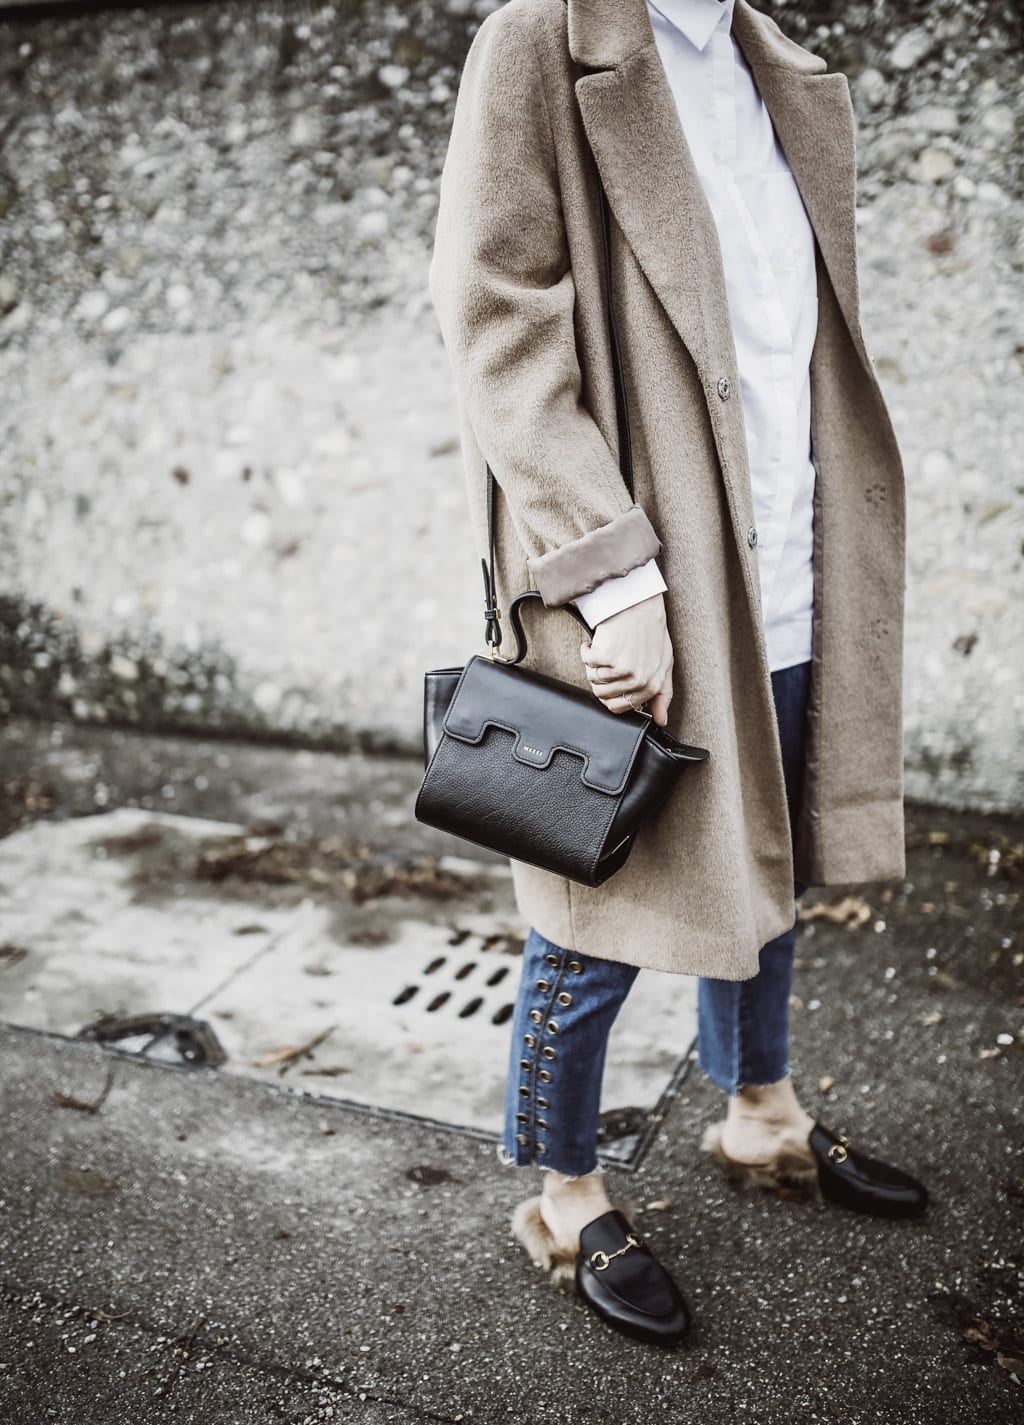 Das ist die Fashion-Bloggerin Karin Kaswurm mit einer Tasche von Mezzi